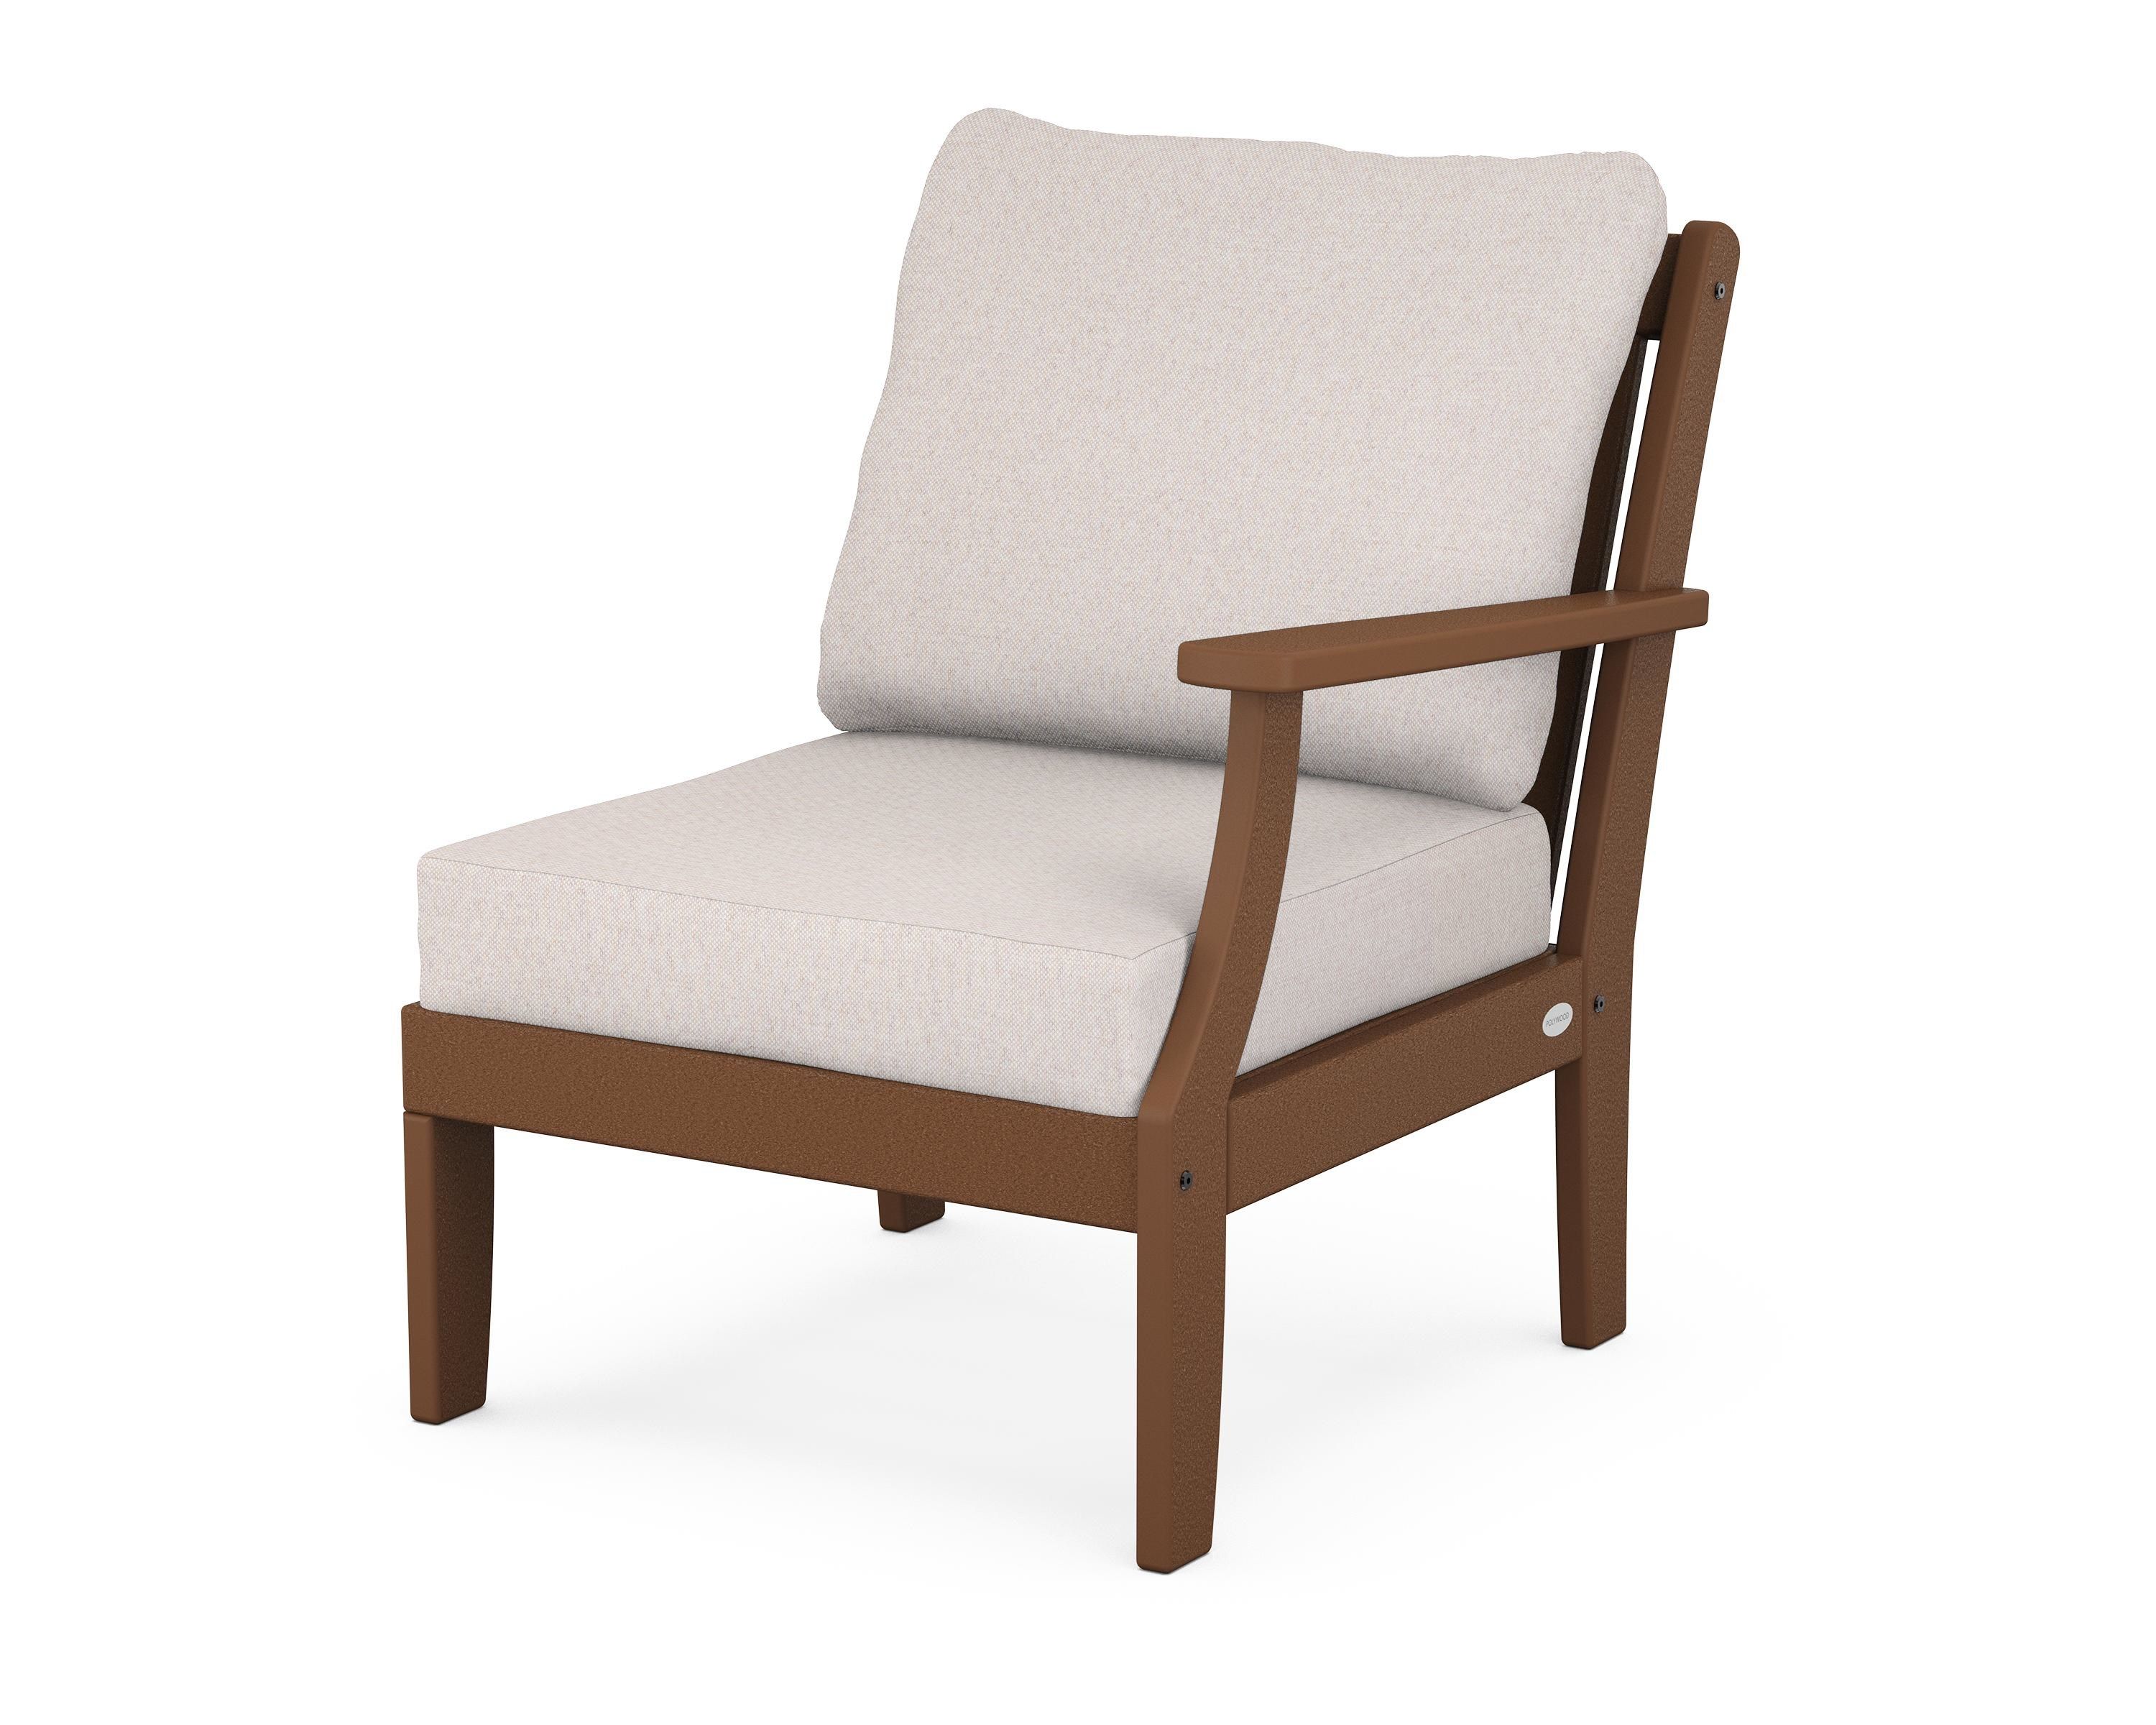 POLYWOOD Braxton Modular Right Arm Chair